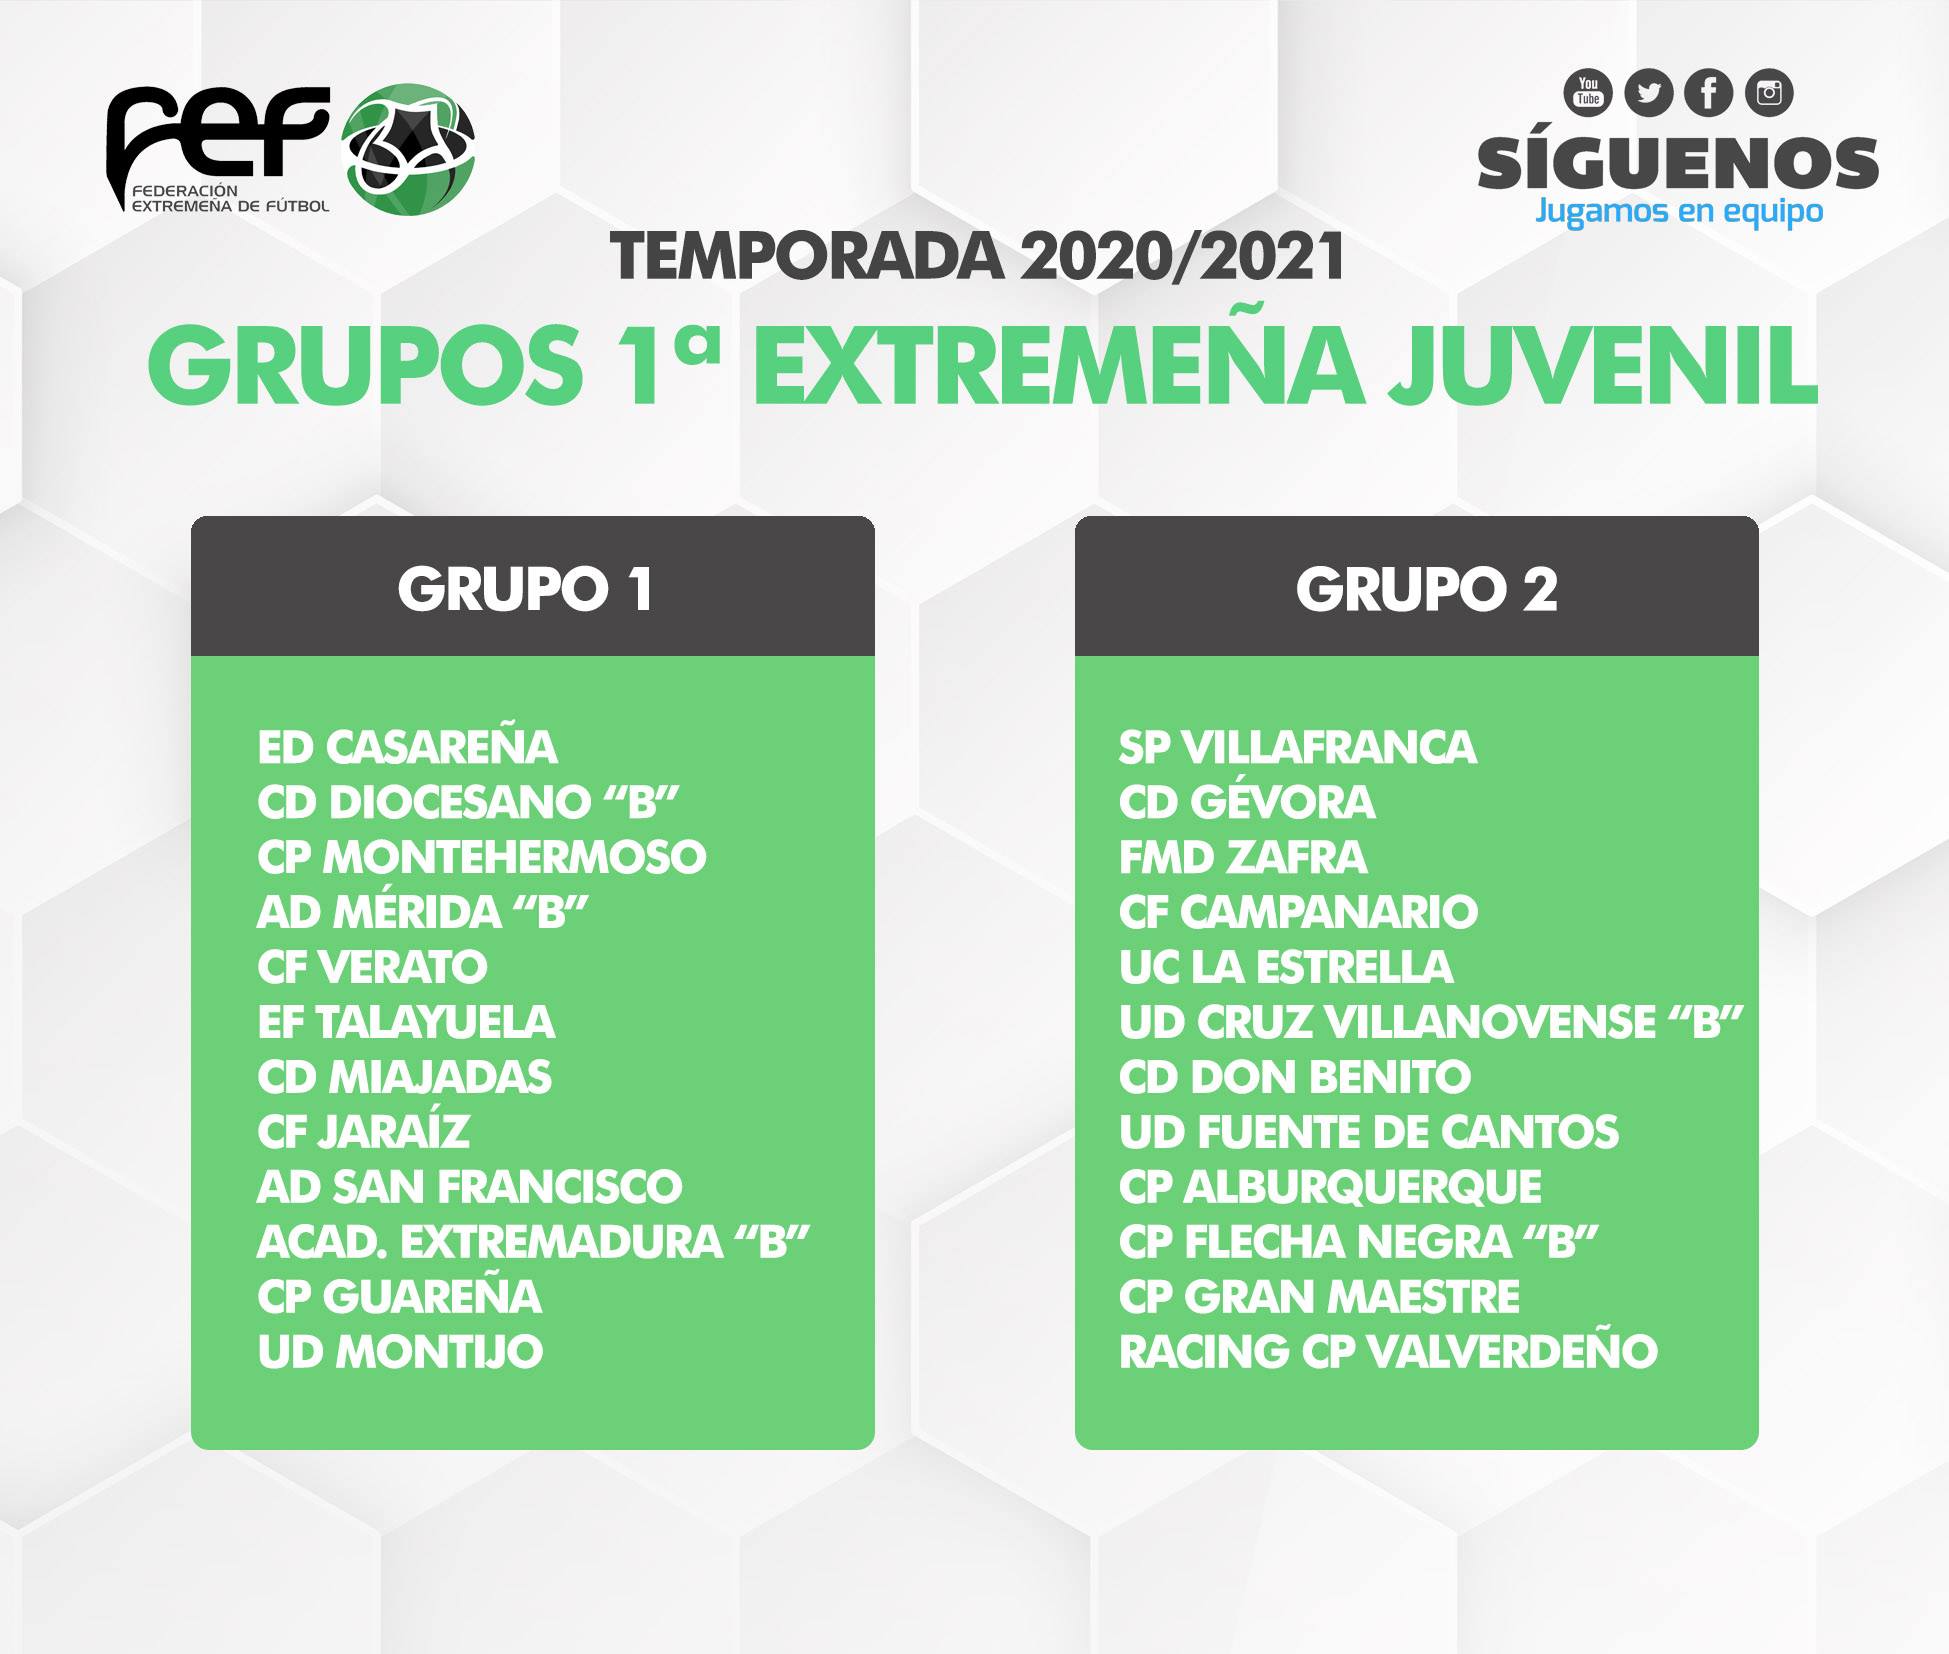 Los Juveniles del CF Campanario jugarán en el Grupo 2